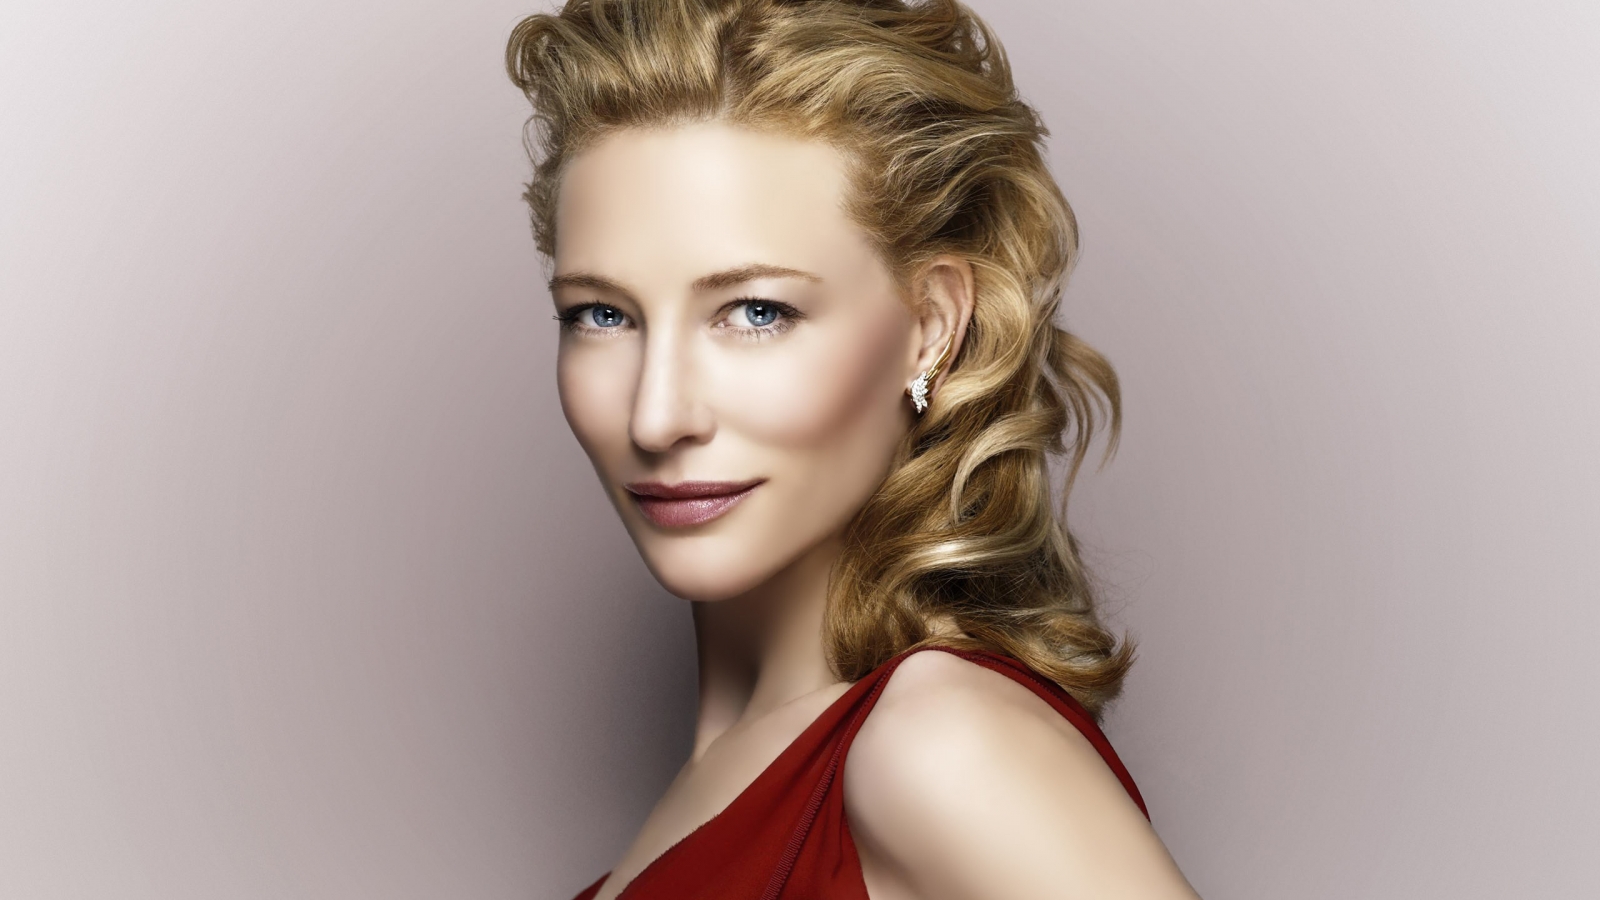 Cate Blanchett for 1600 x 900 HDTV resolution